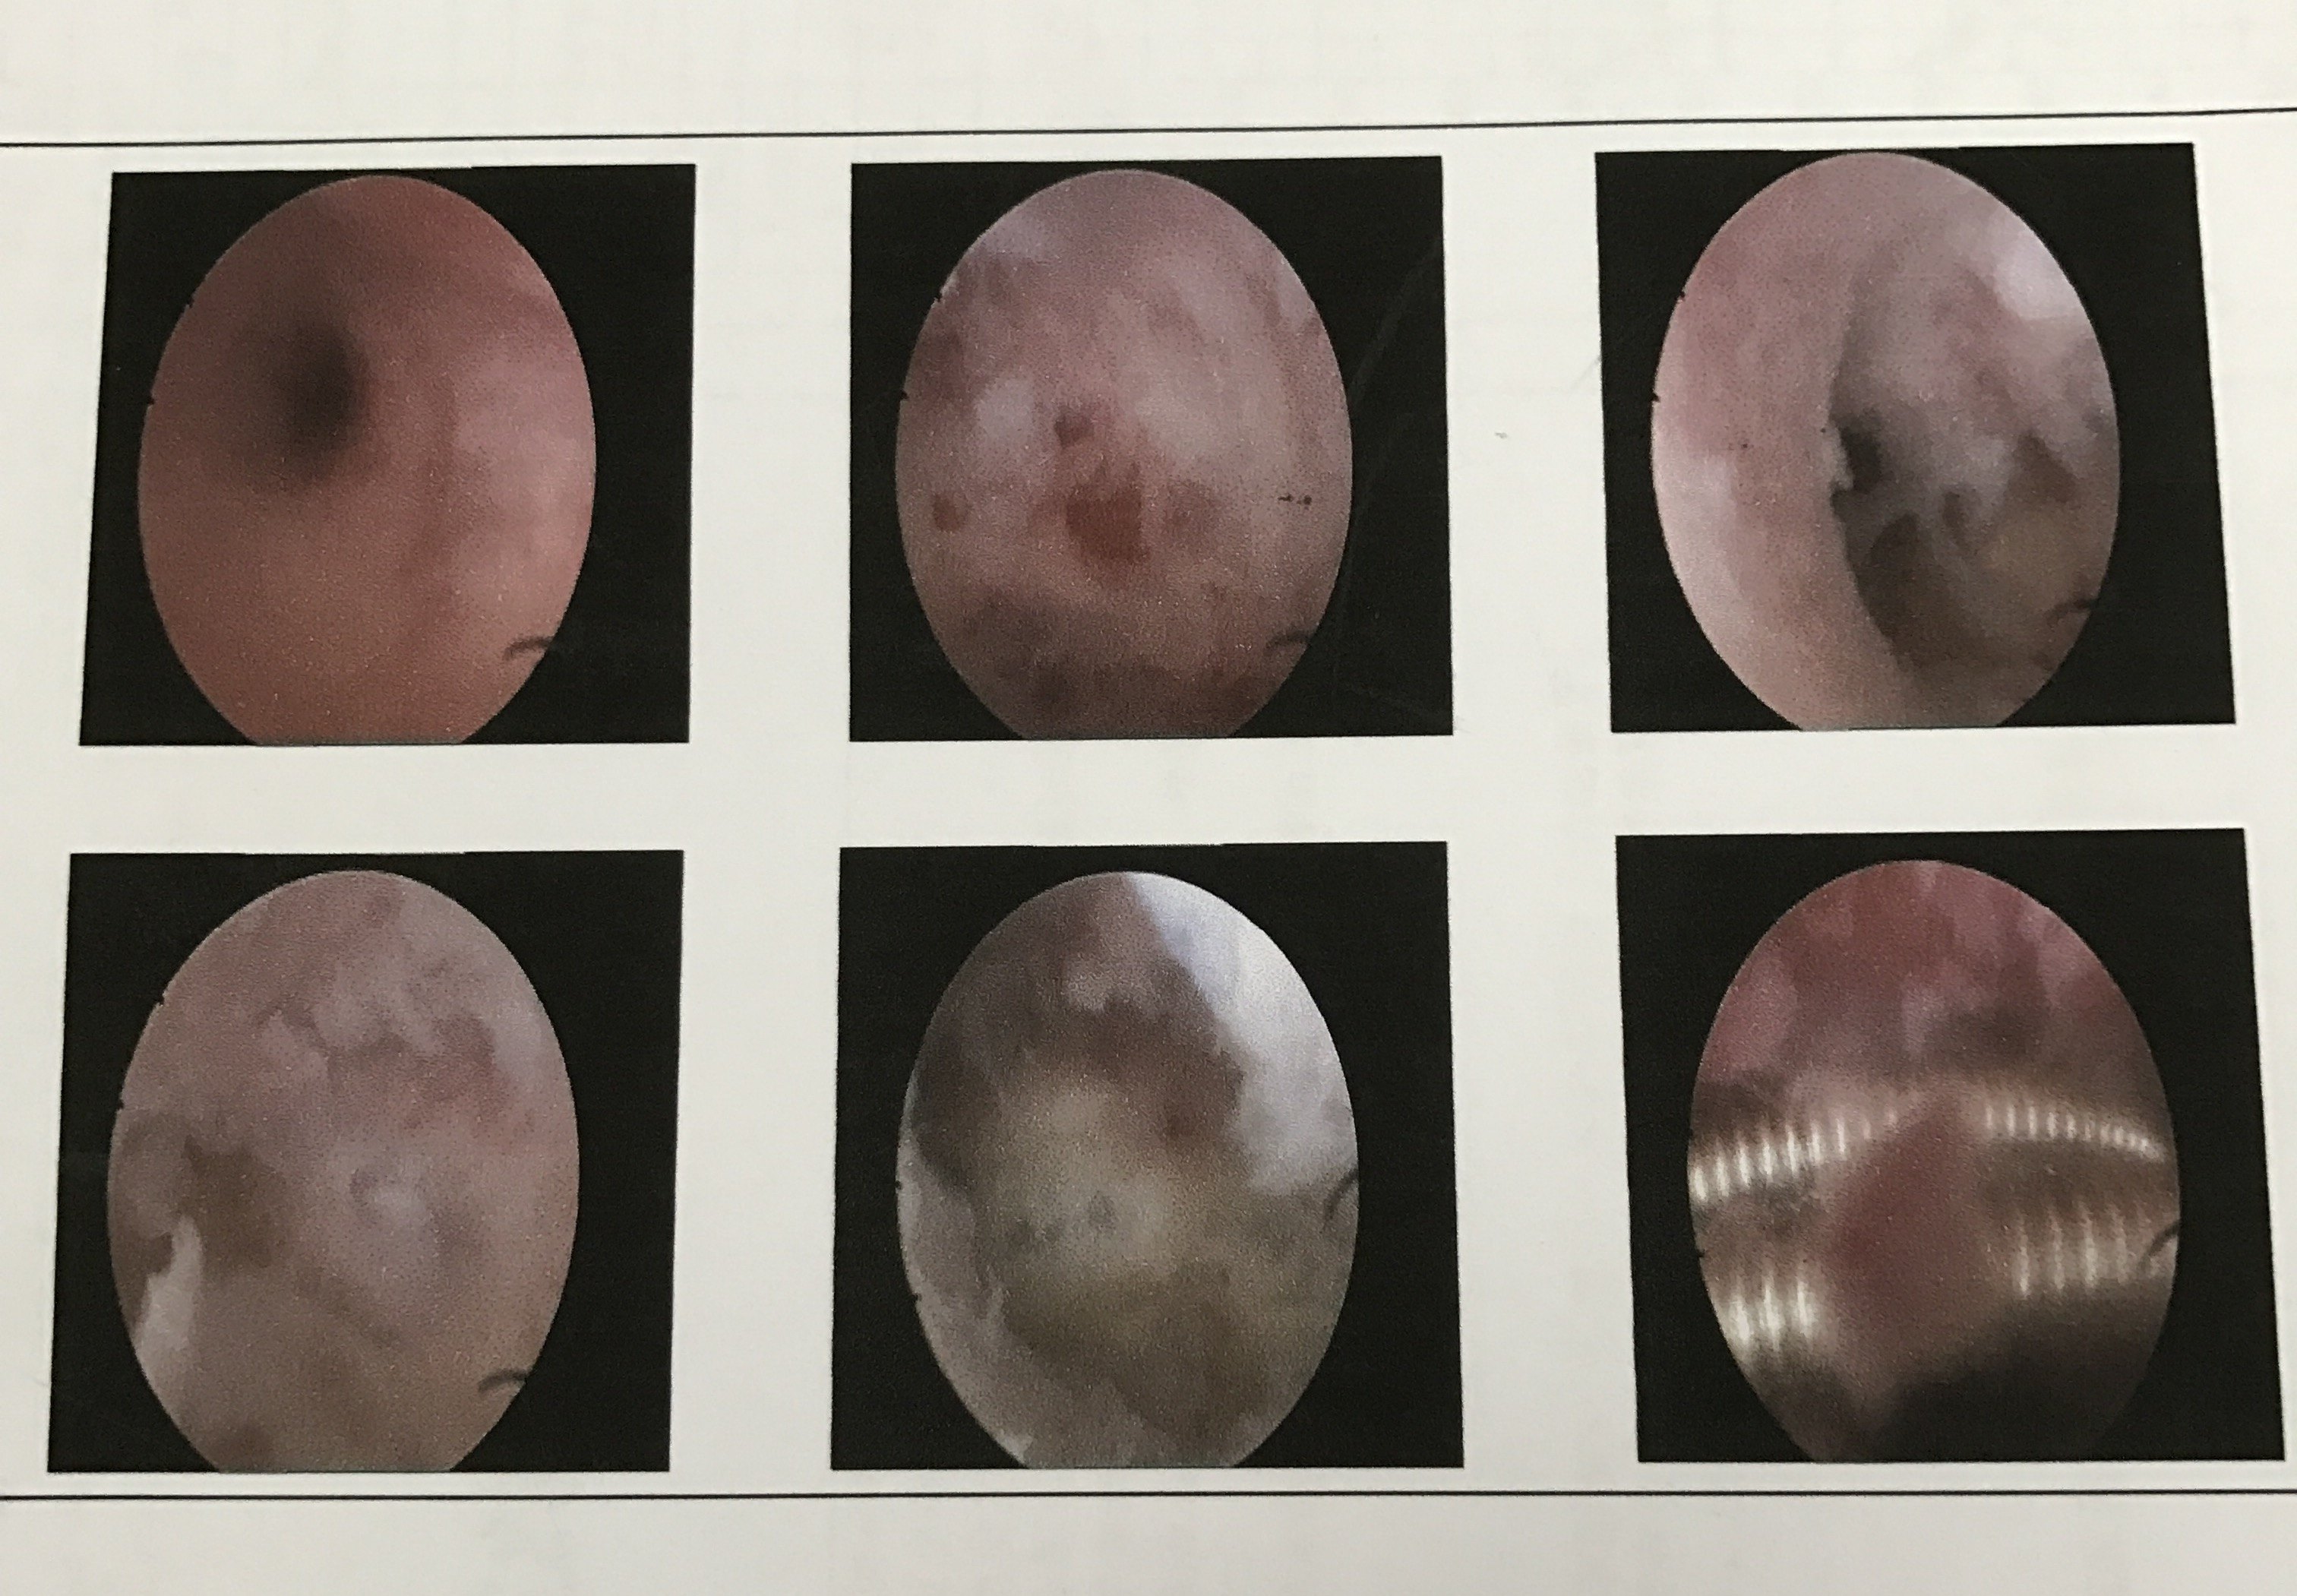 宫腔镜手术后水囊图片图片